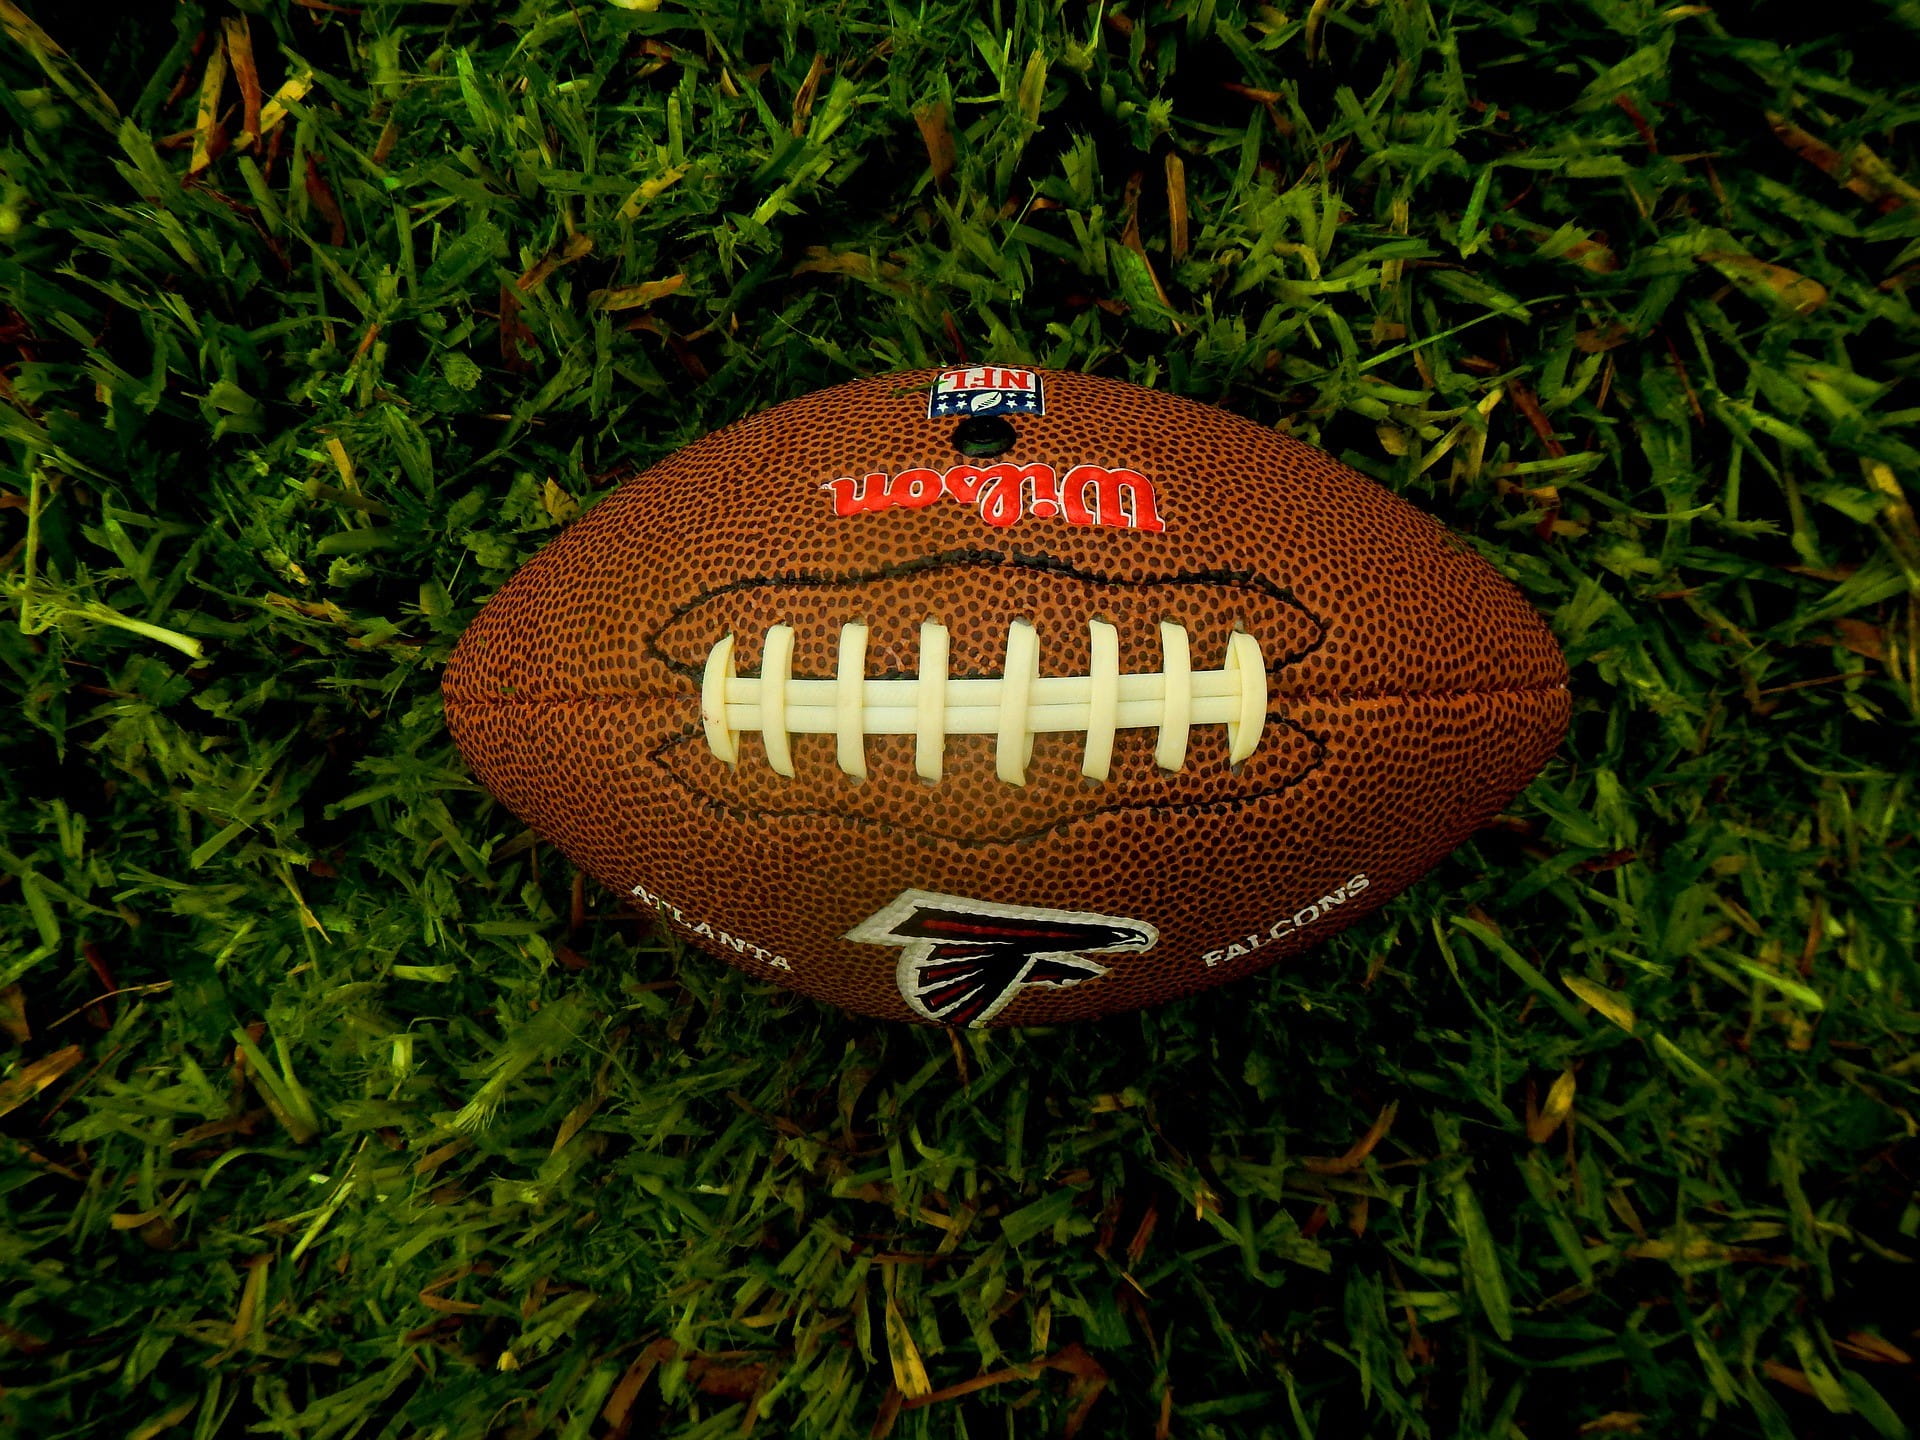 Ein brauner Football der Atlanta Falcons liegt auf dem Rasen.